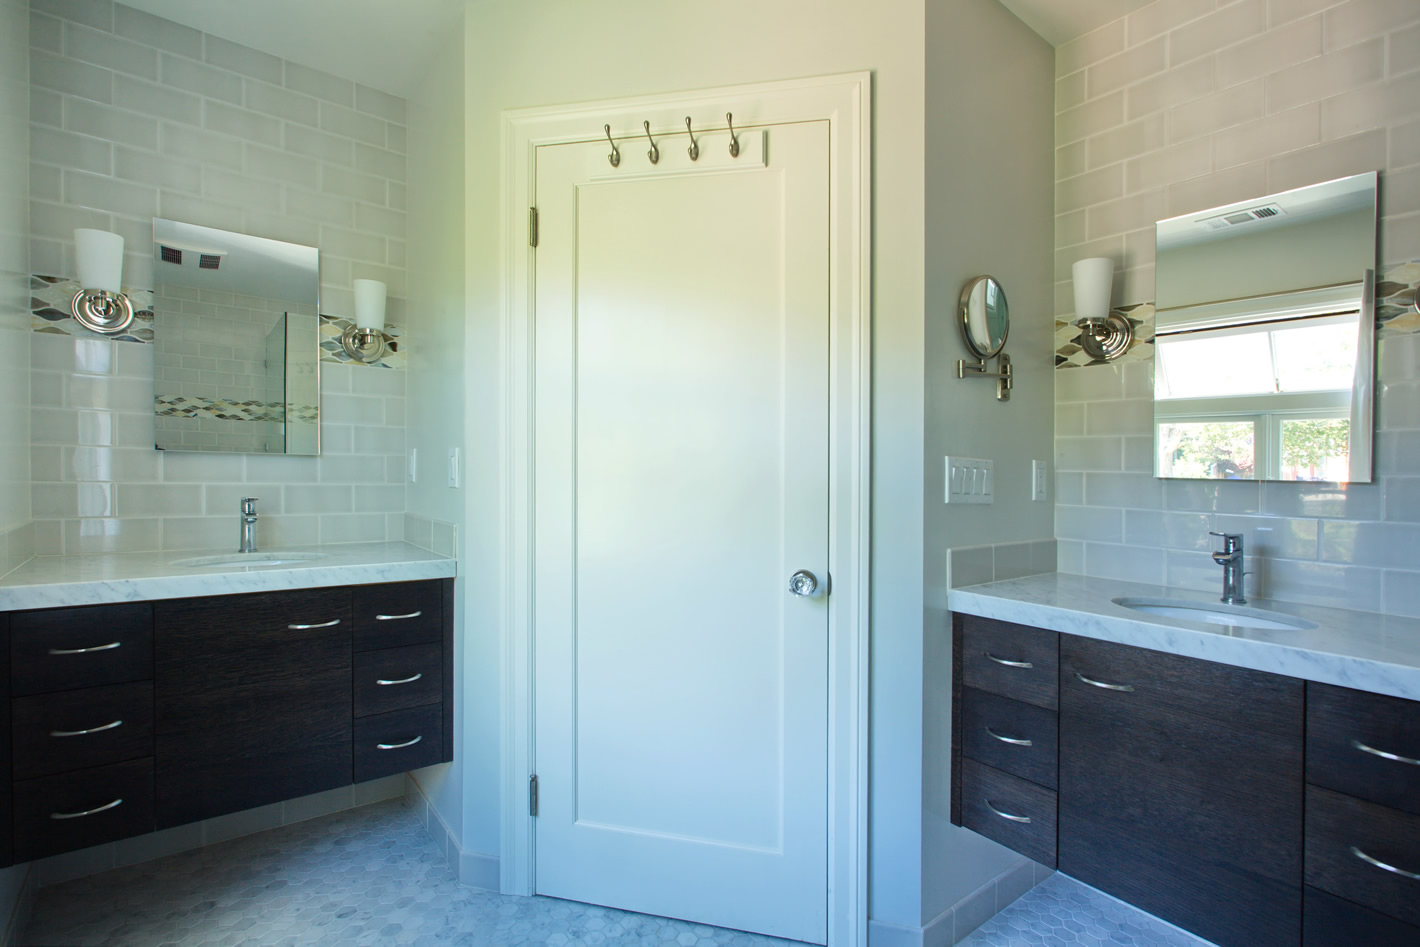 Berkeley Hills Renovation - Bathroom Design